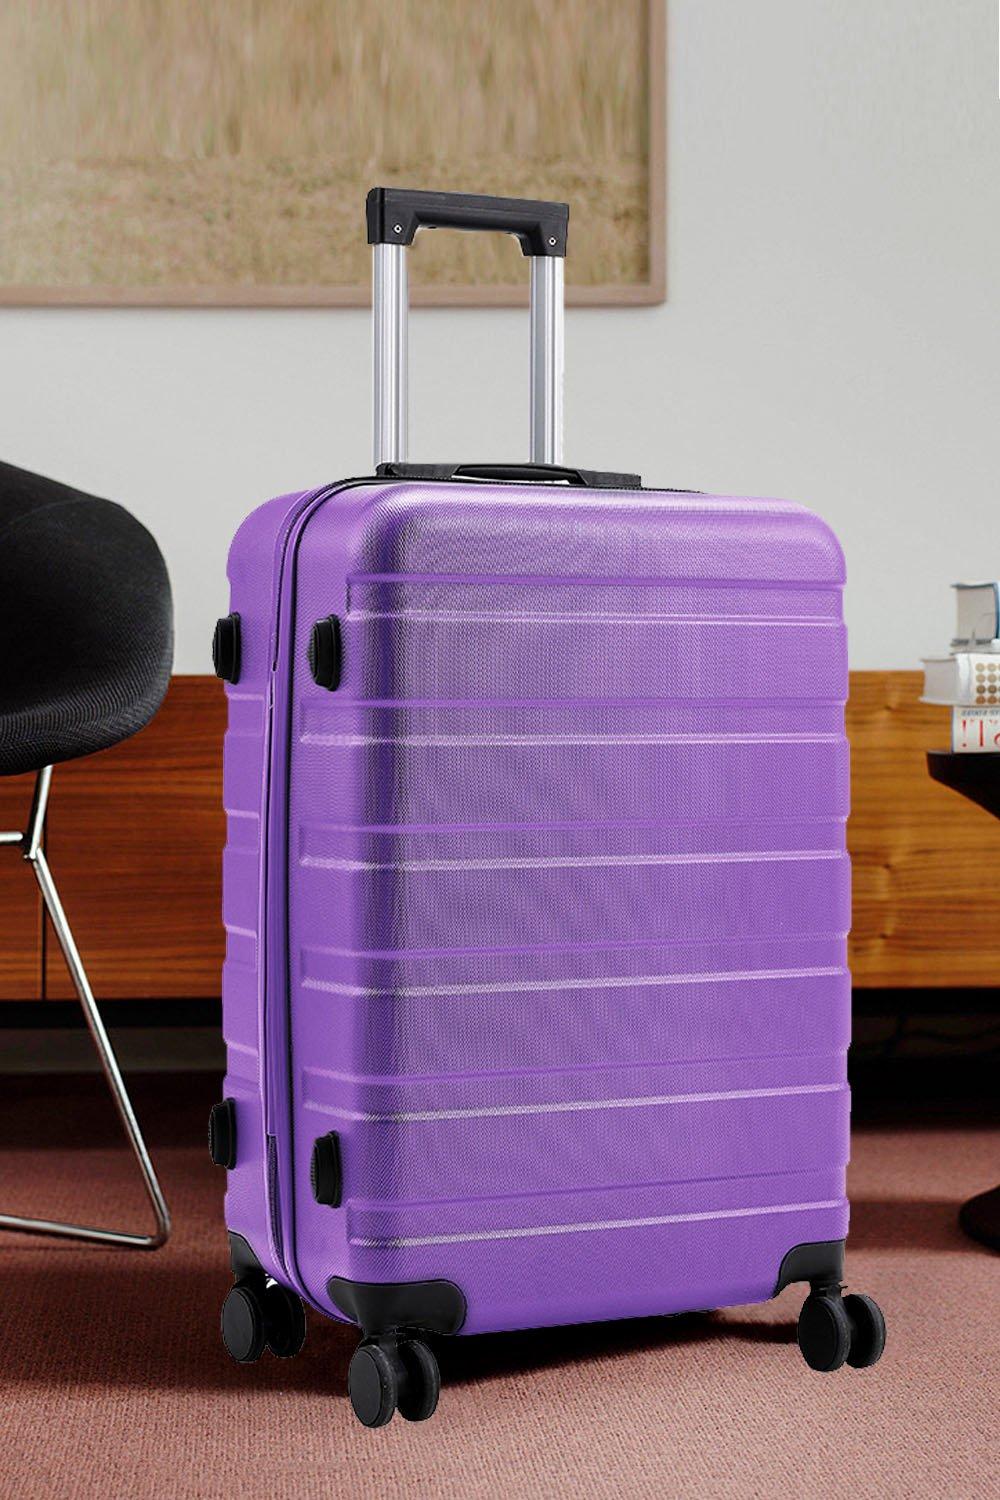 Hardshell Rolling Luggage Trolley Travel Suitcase, 20